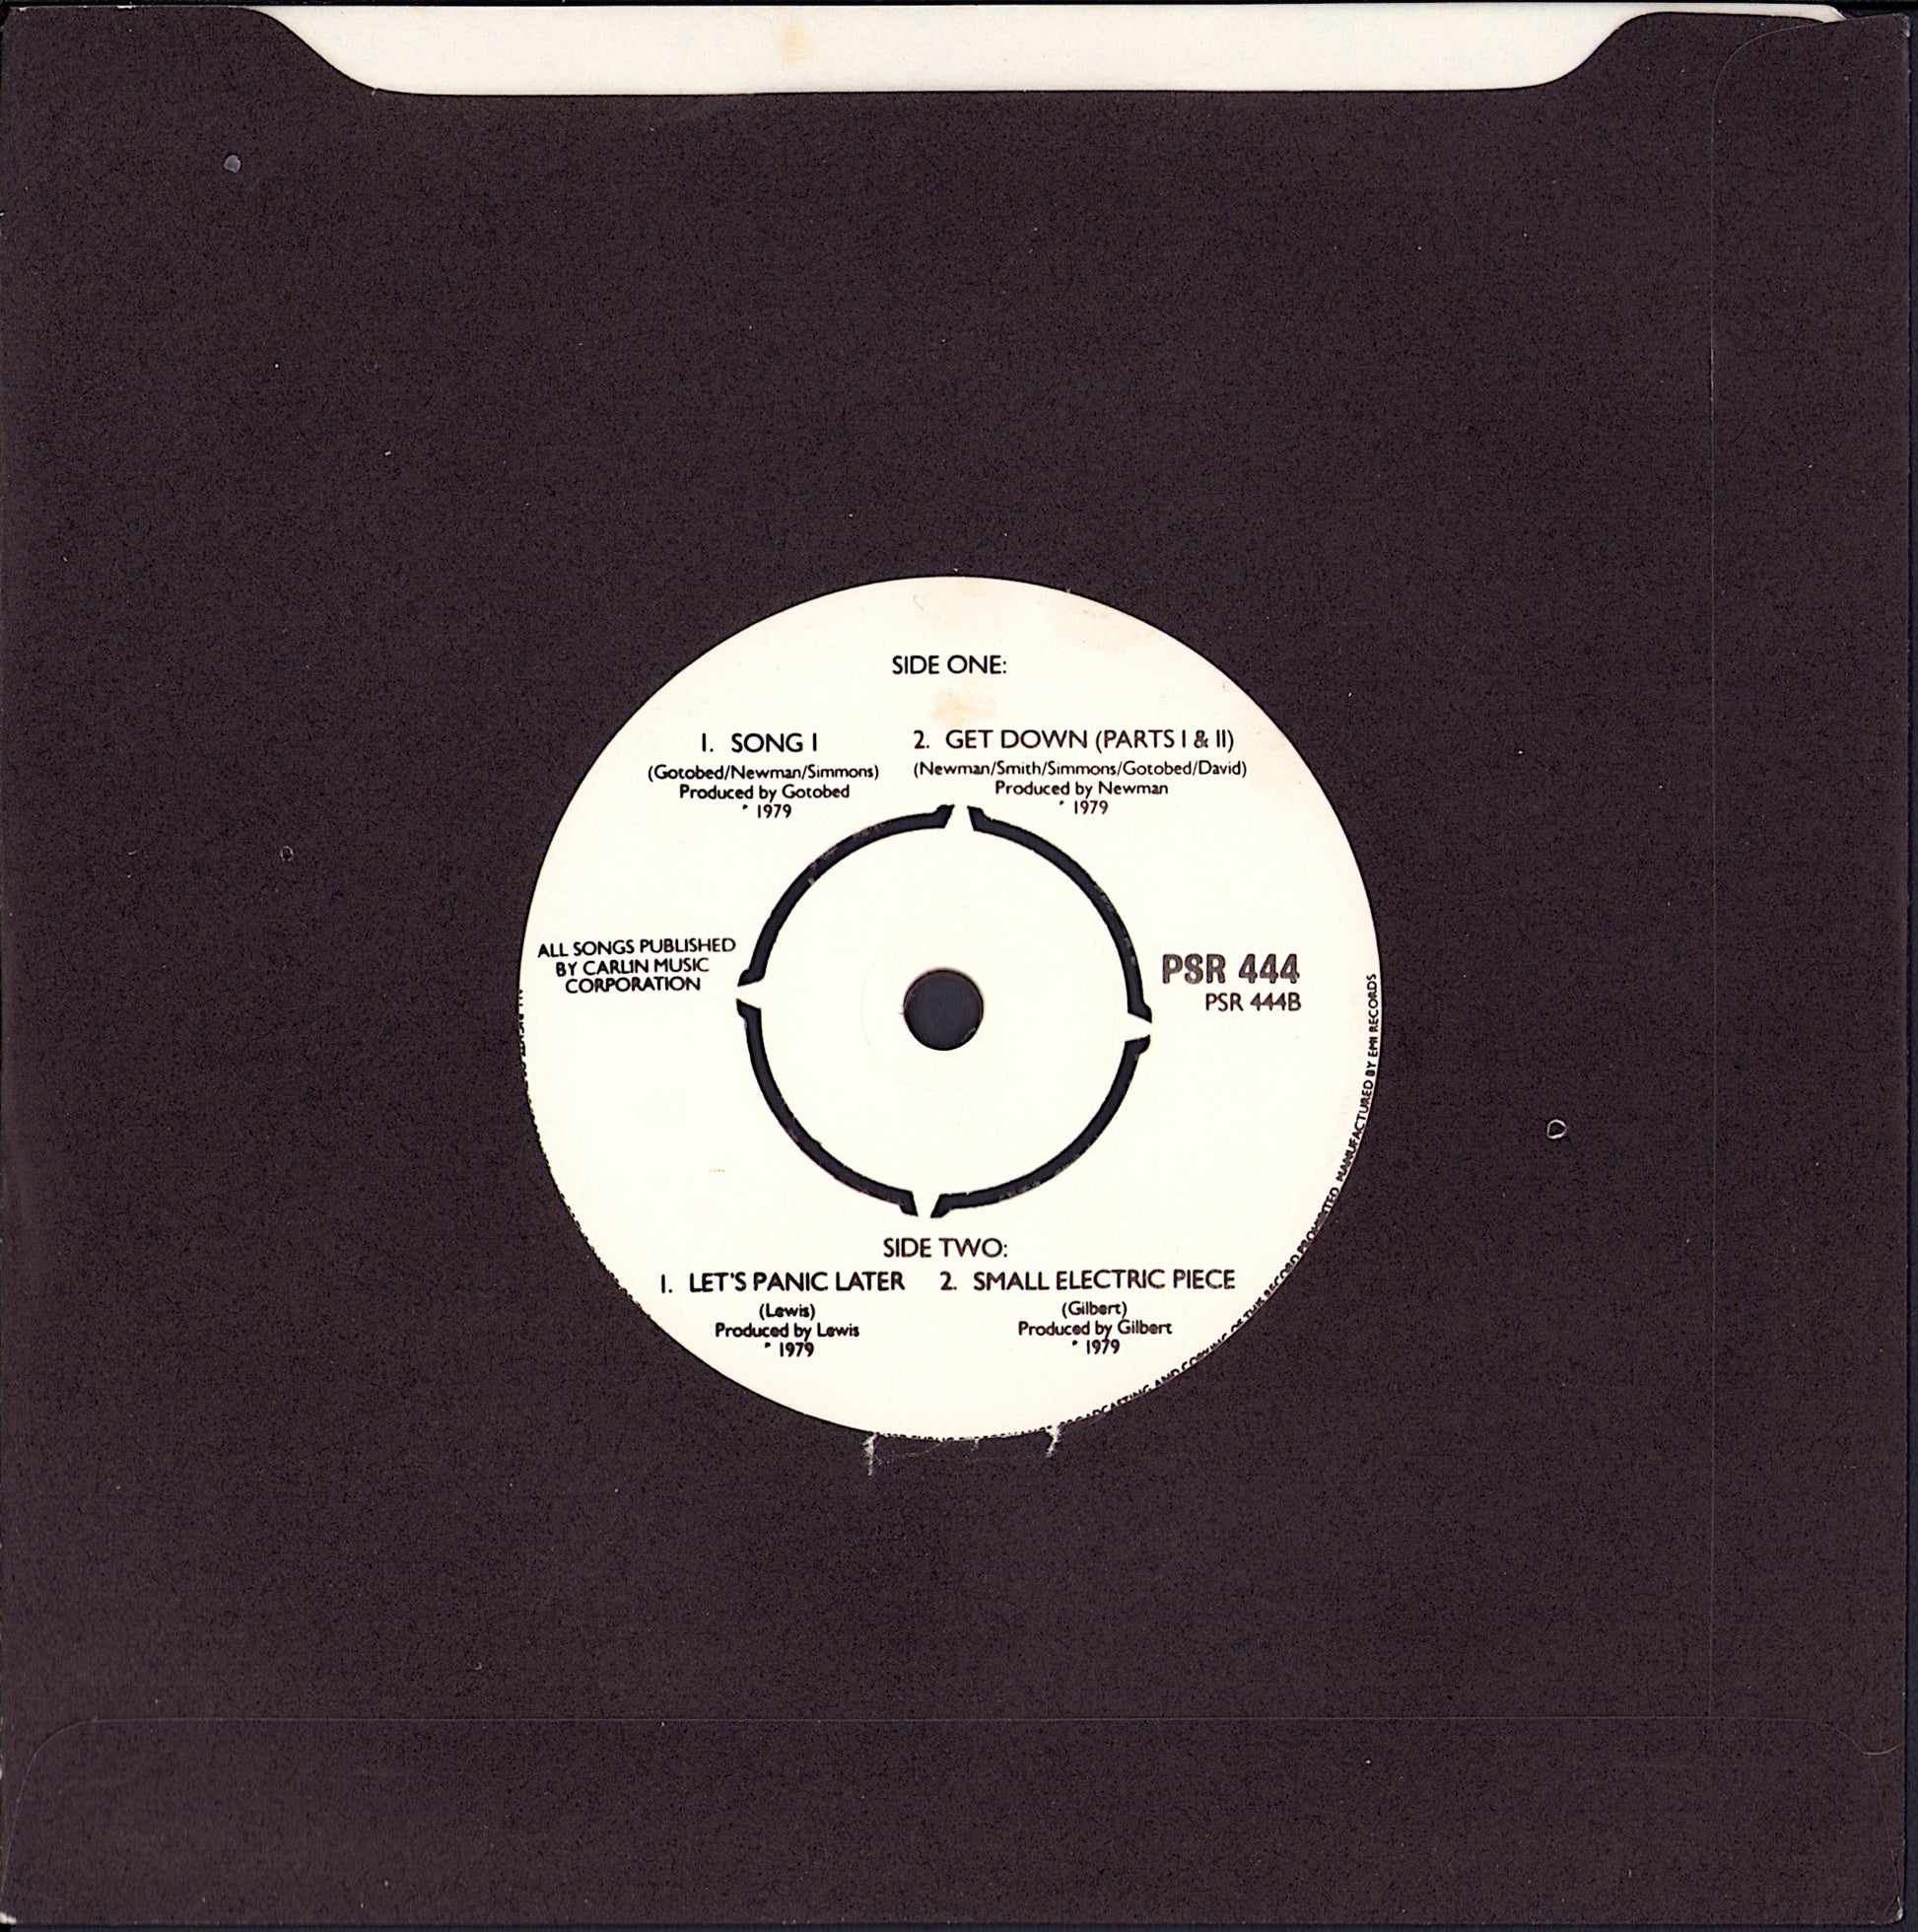 Wire - 154 Vinyl LP + 7" EP